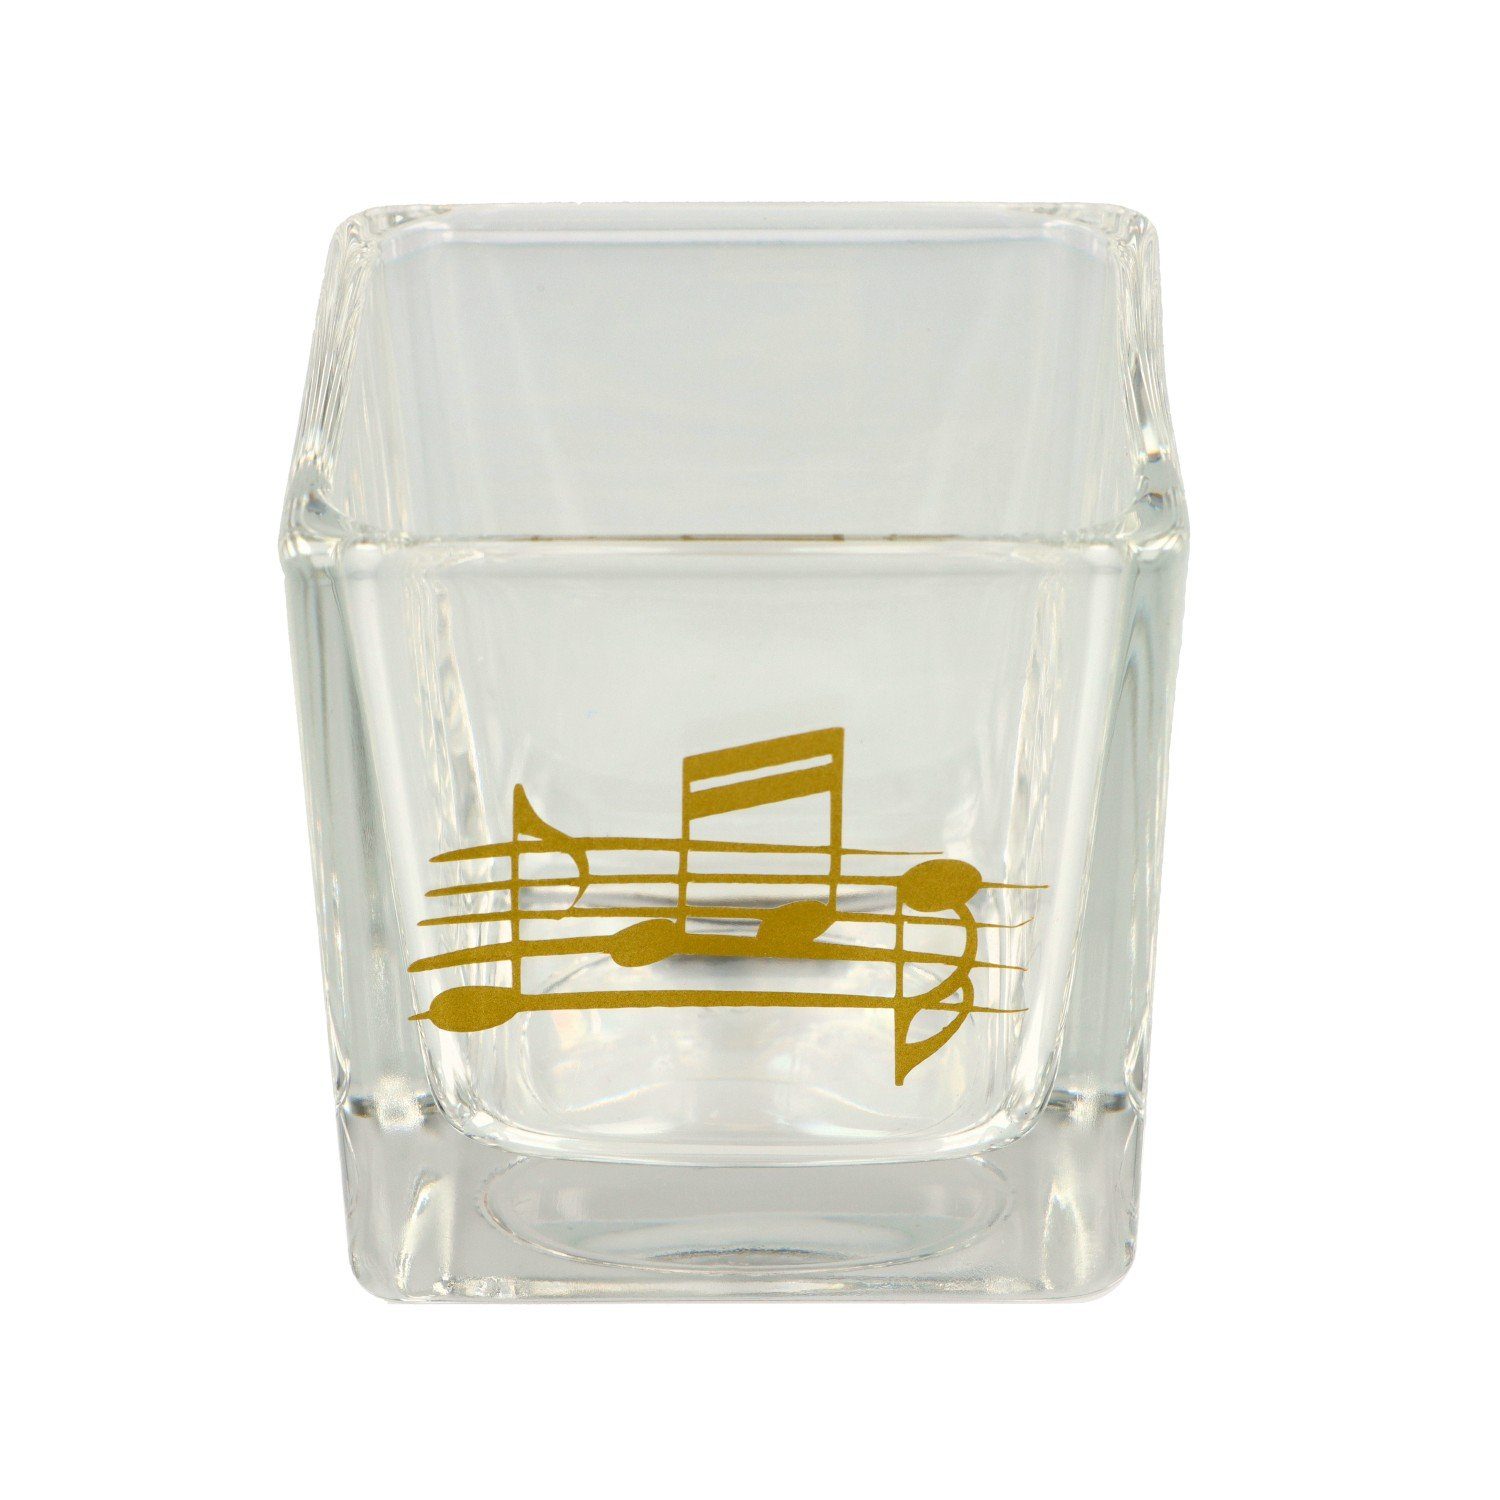 Musikboutique Teelichthalter, aus Glas in Notenlinie mit Noten silber und